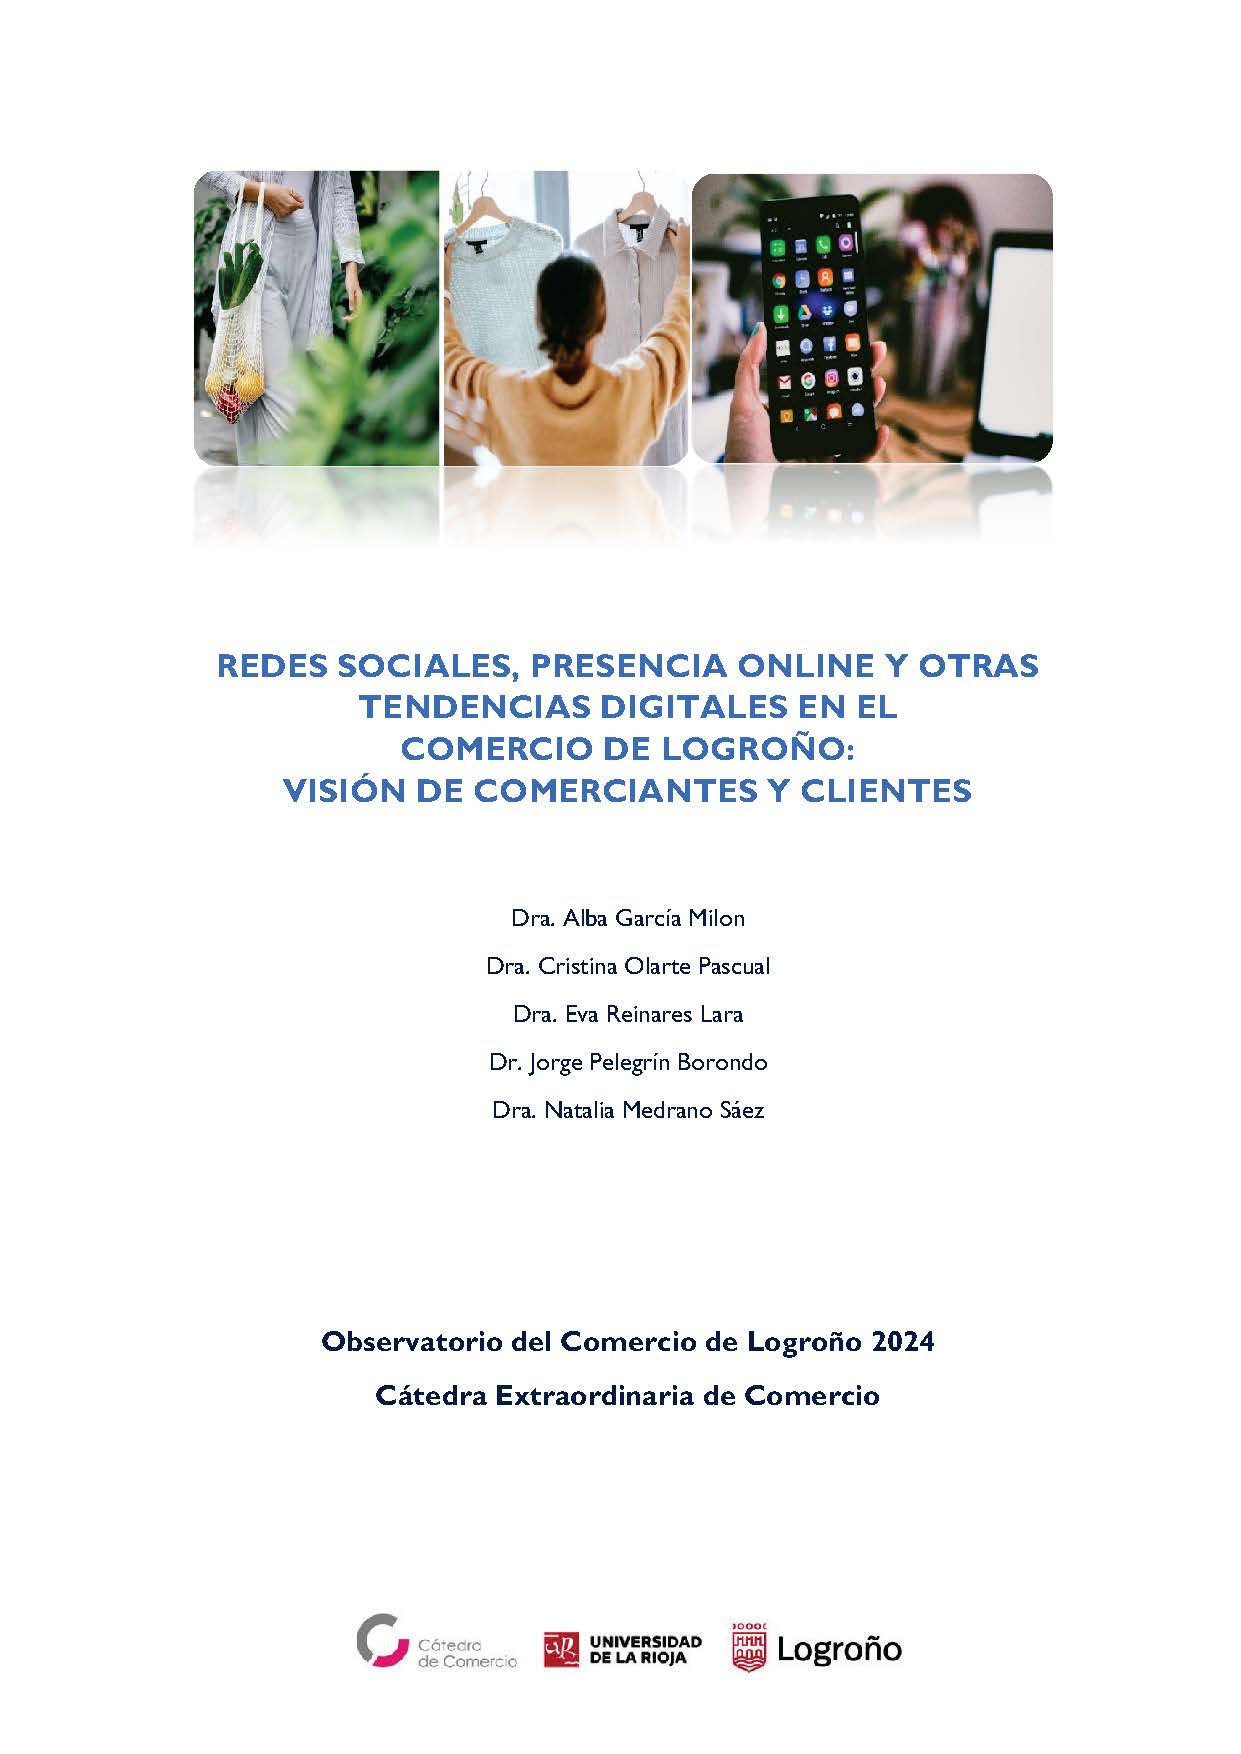 Imagen de portada del libro Redes sociales, presencia online y otras tendencias digitales en el comercio de Logroño